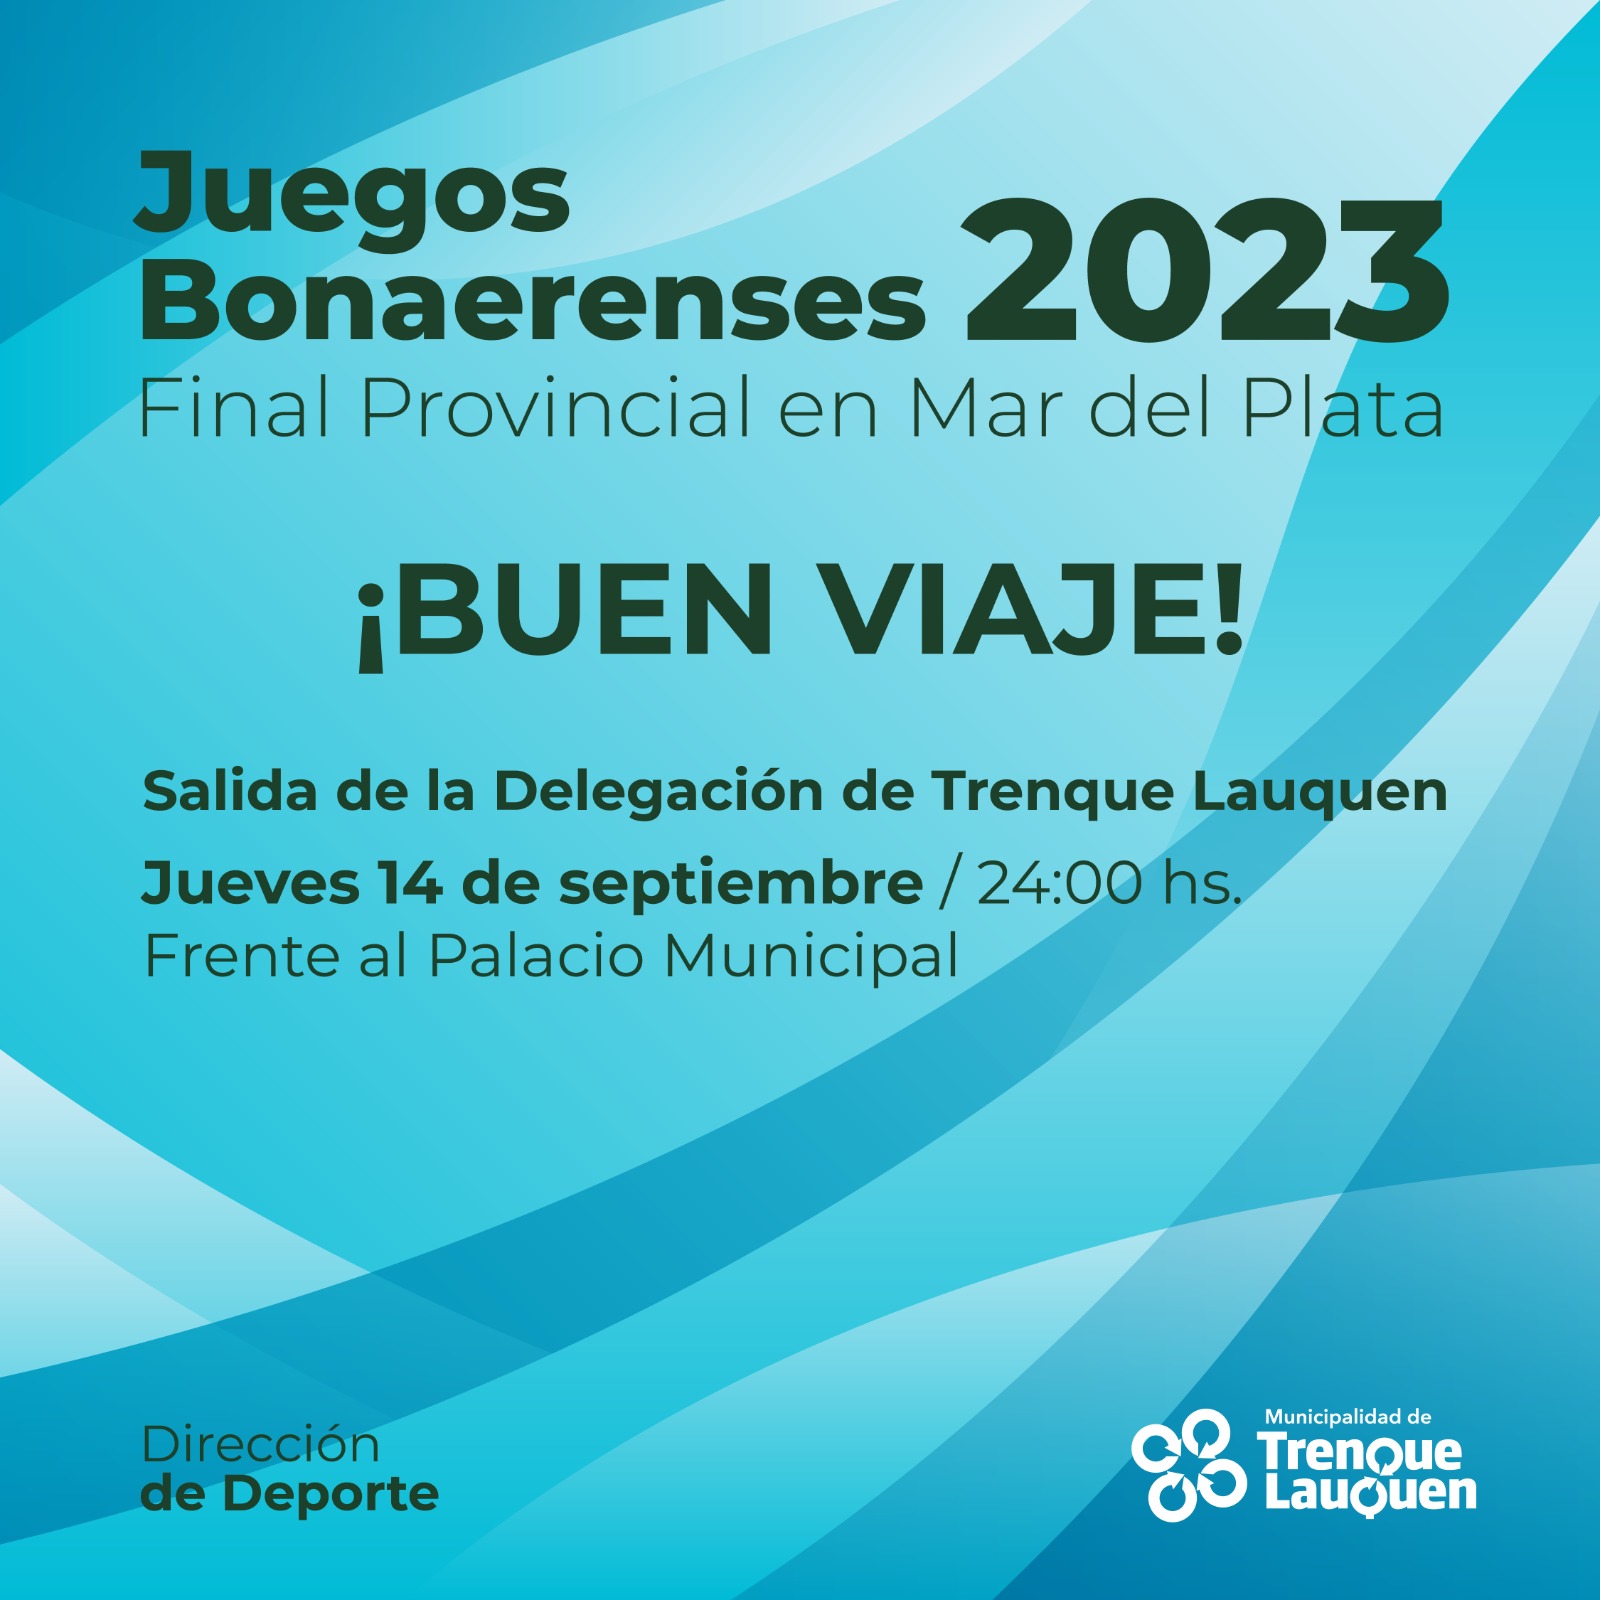 Una delegación con 370 personas viaja mañana a la noche a la final de los Torneos Bonaerenses